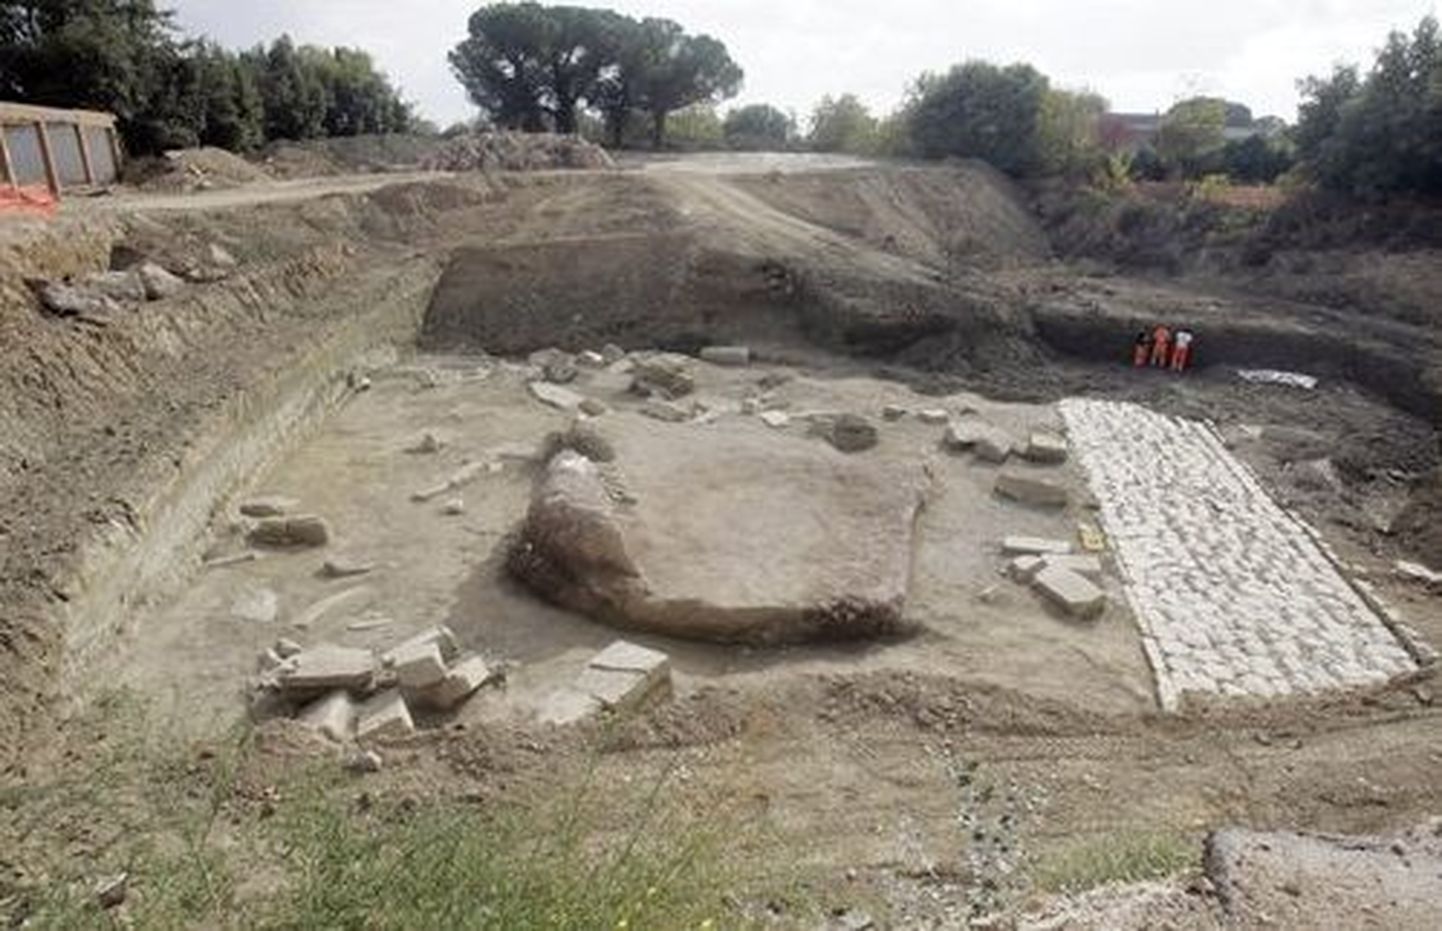 Roomas leiti ragbistaadioni renoveerimise käigus nekropol